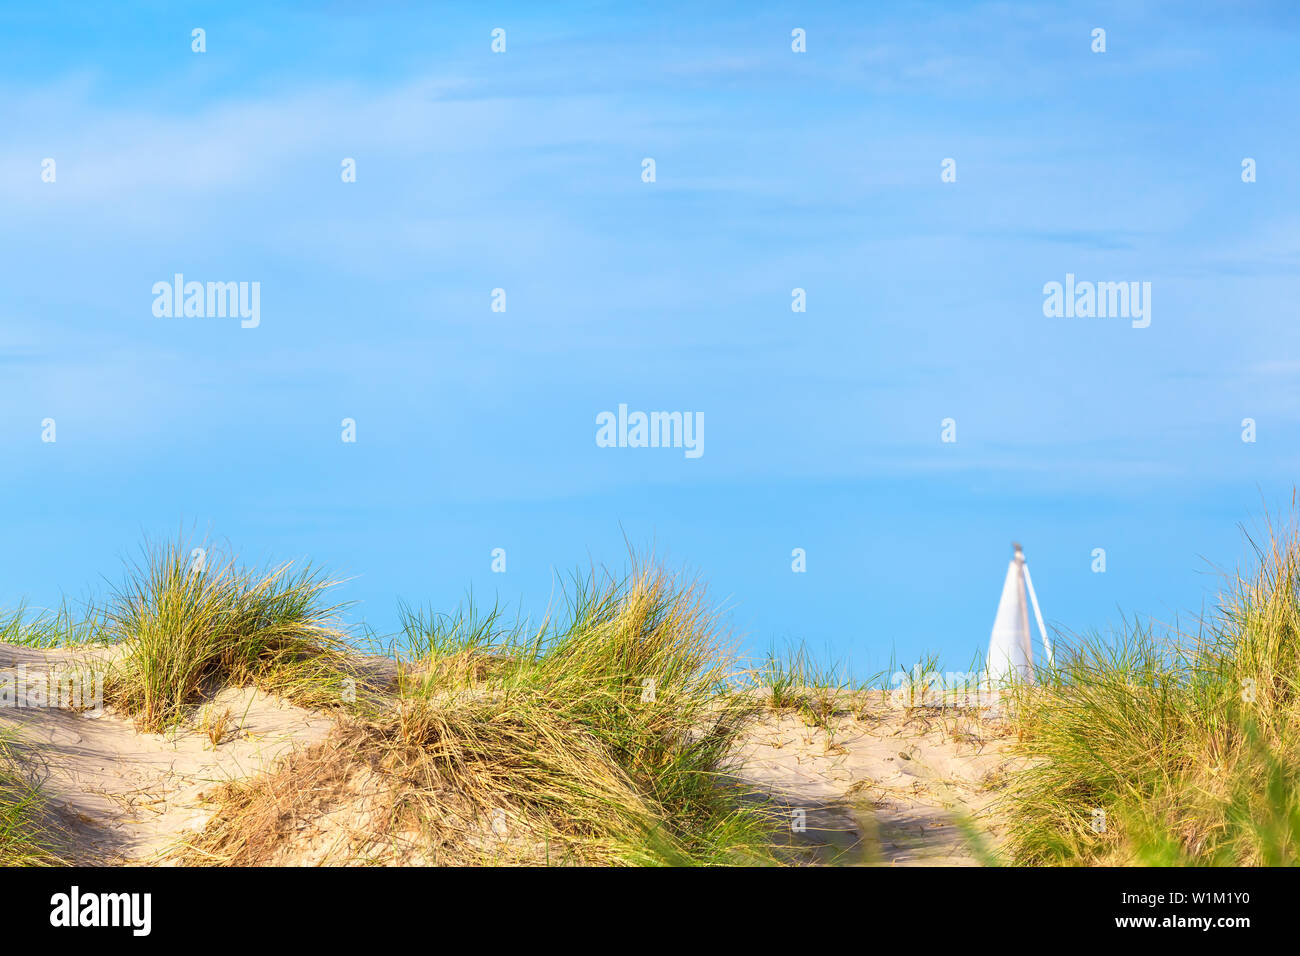 Paysage de dunes à la mer Baltique, de voile blanche voilier derrière, vaste ciel copy space Banque D'Images